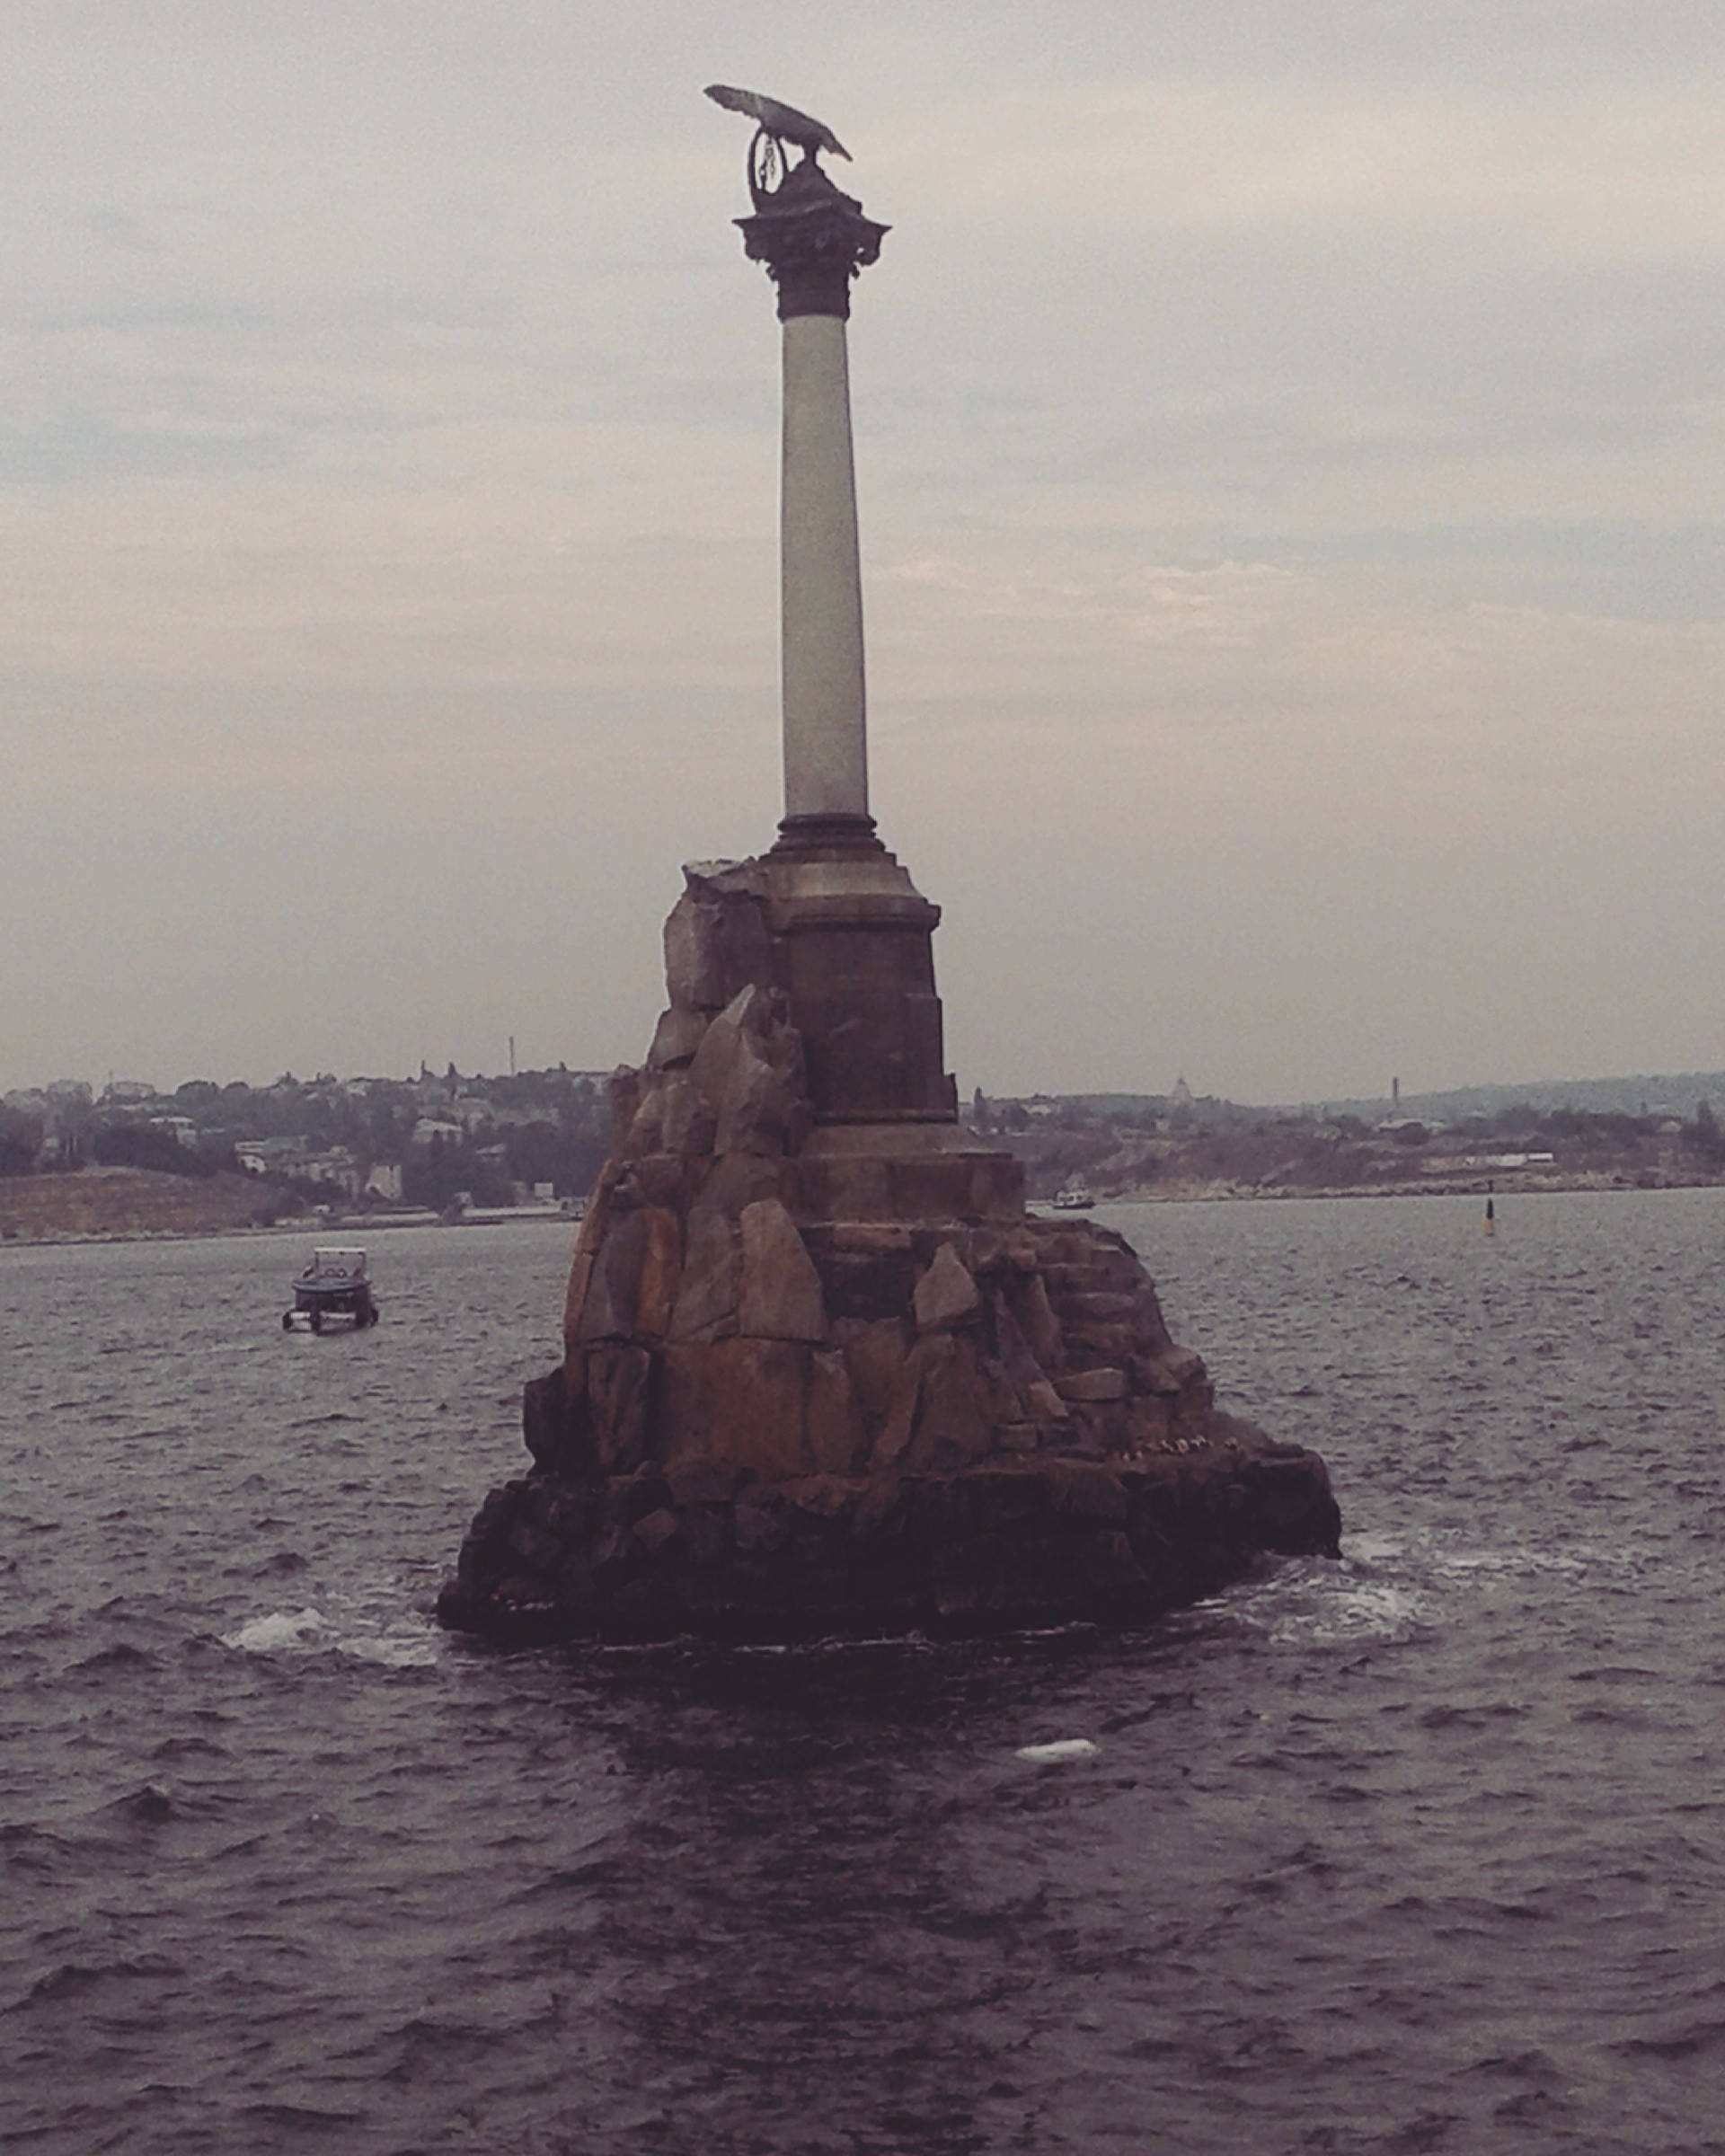 Севастополь, Памятник «Утонувший корабля», сентябрь 2015